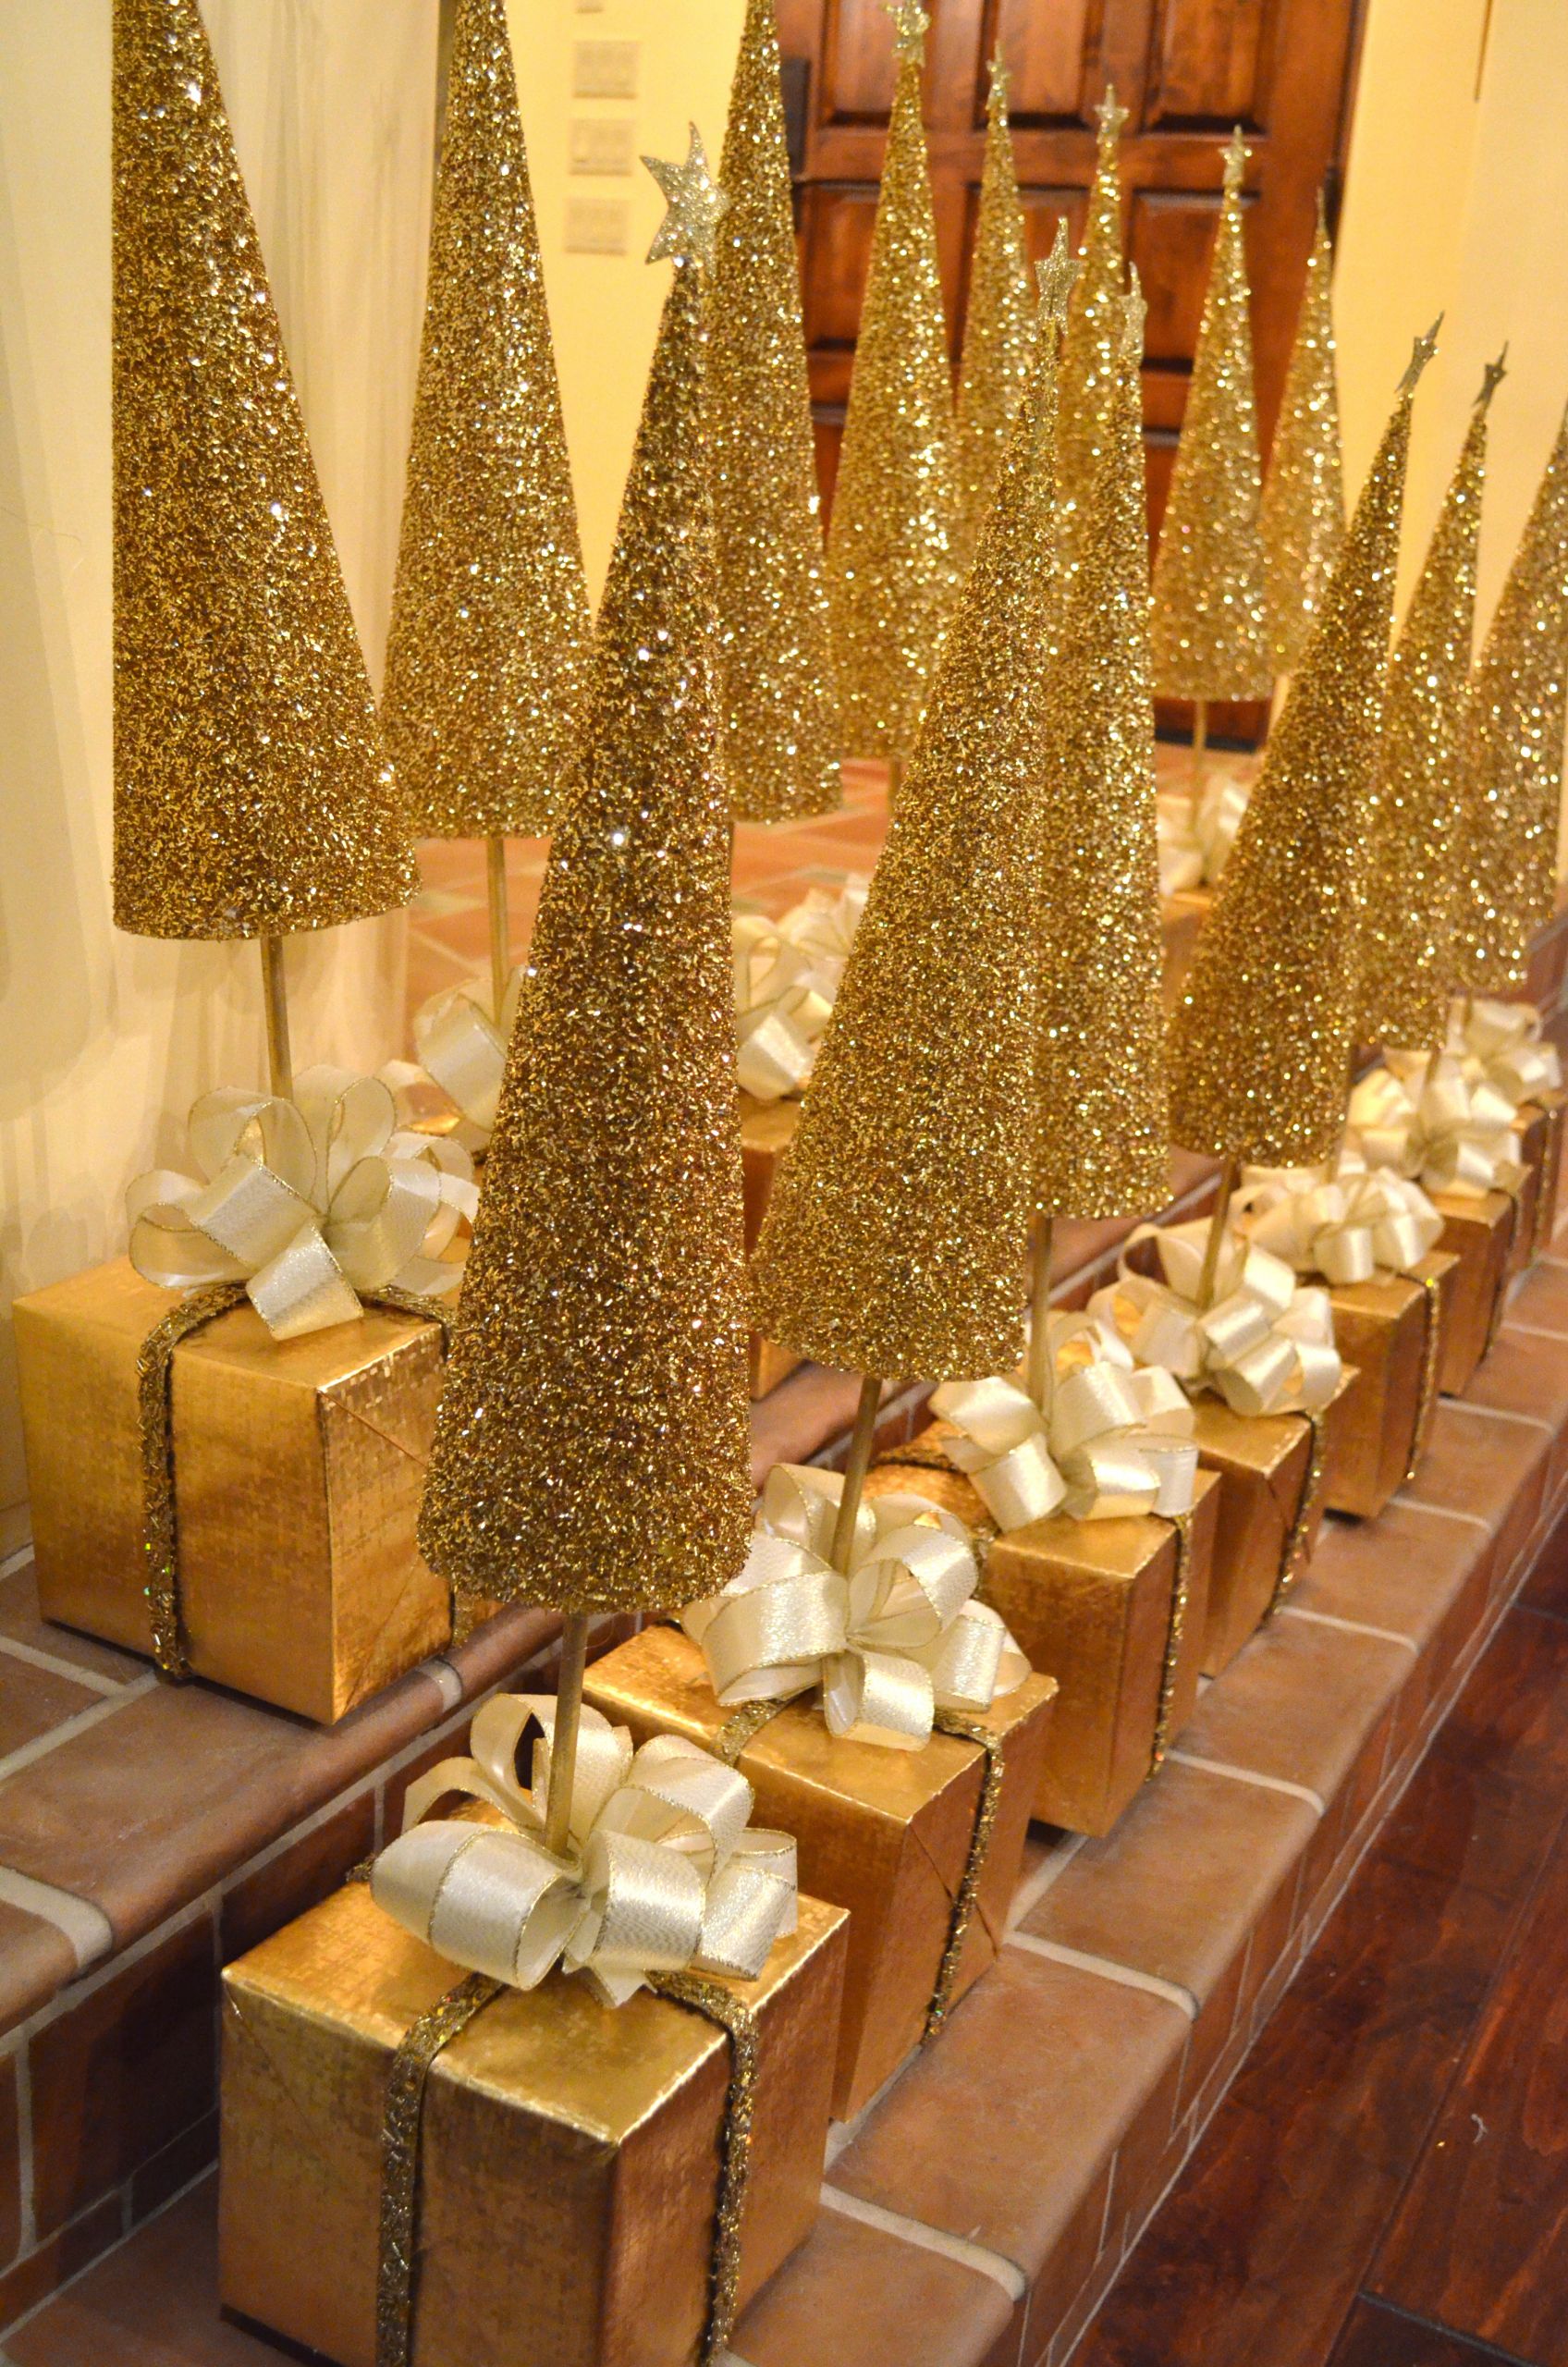 DIY Christmas Centerpieces
 DIY GOLDEN CHRISTMAS TREE CENTERPIECES – A TUTORIAL